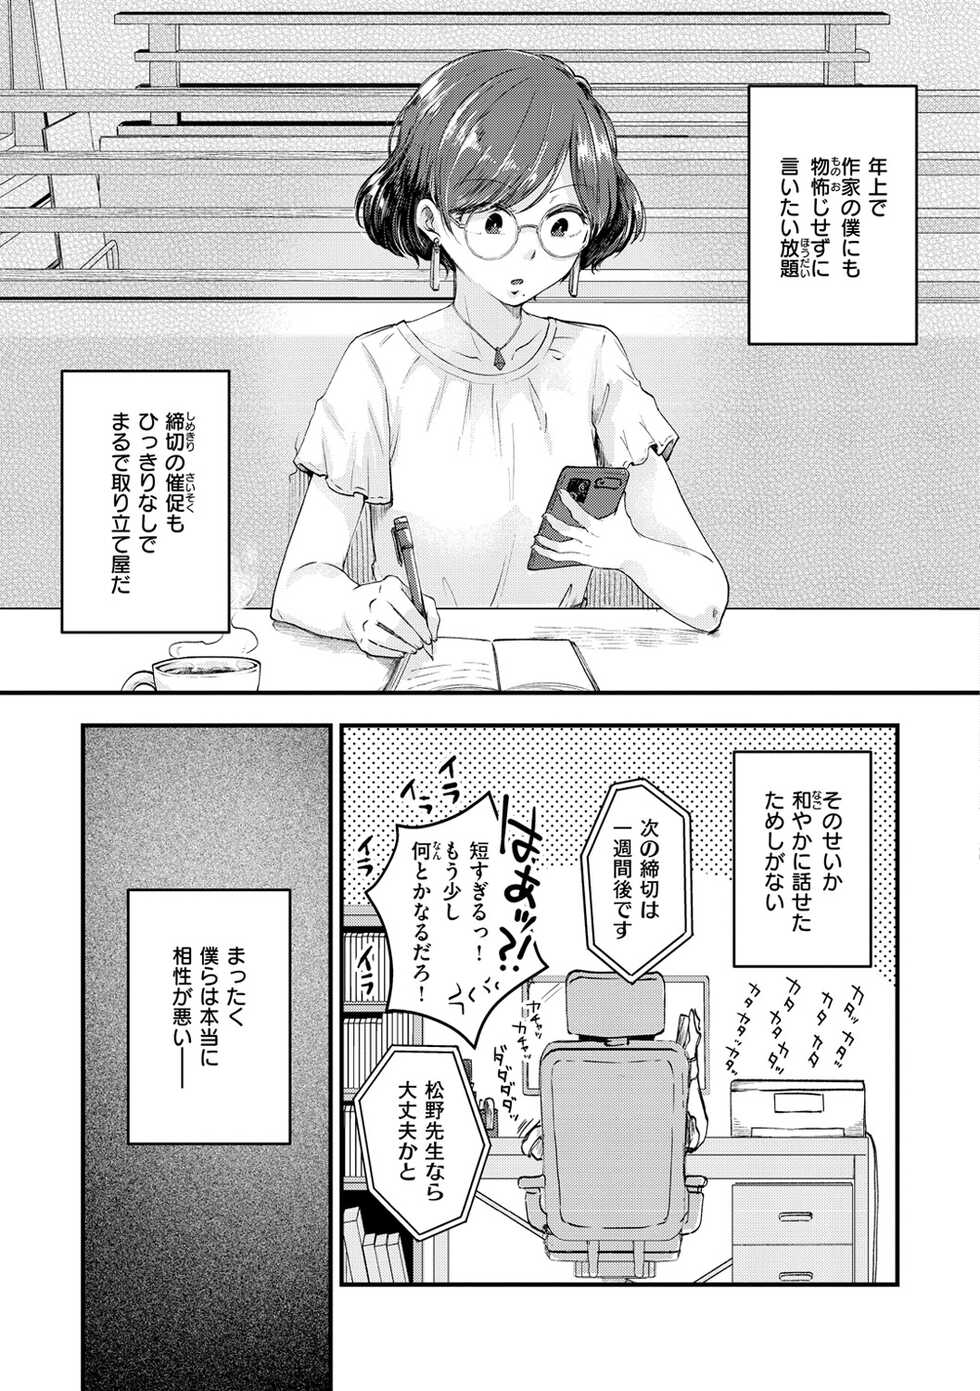 [Enoki] Kekkyoku wa Mesu nano de - She's Just a Pussy. [Digital] - Page 5